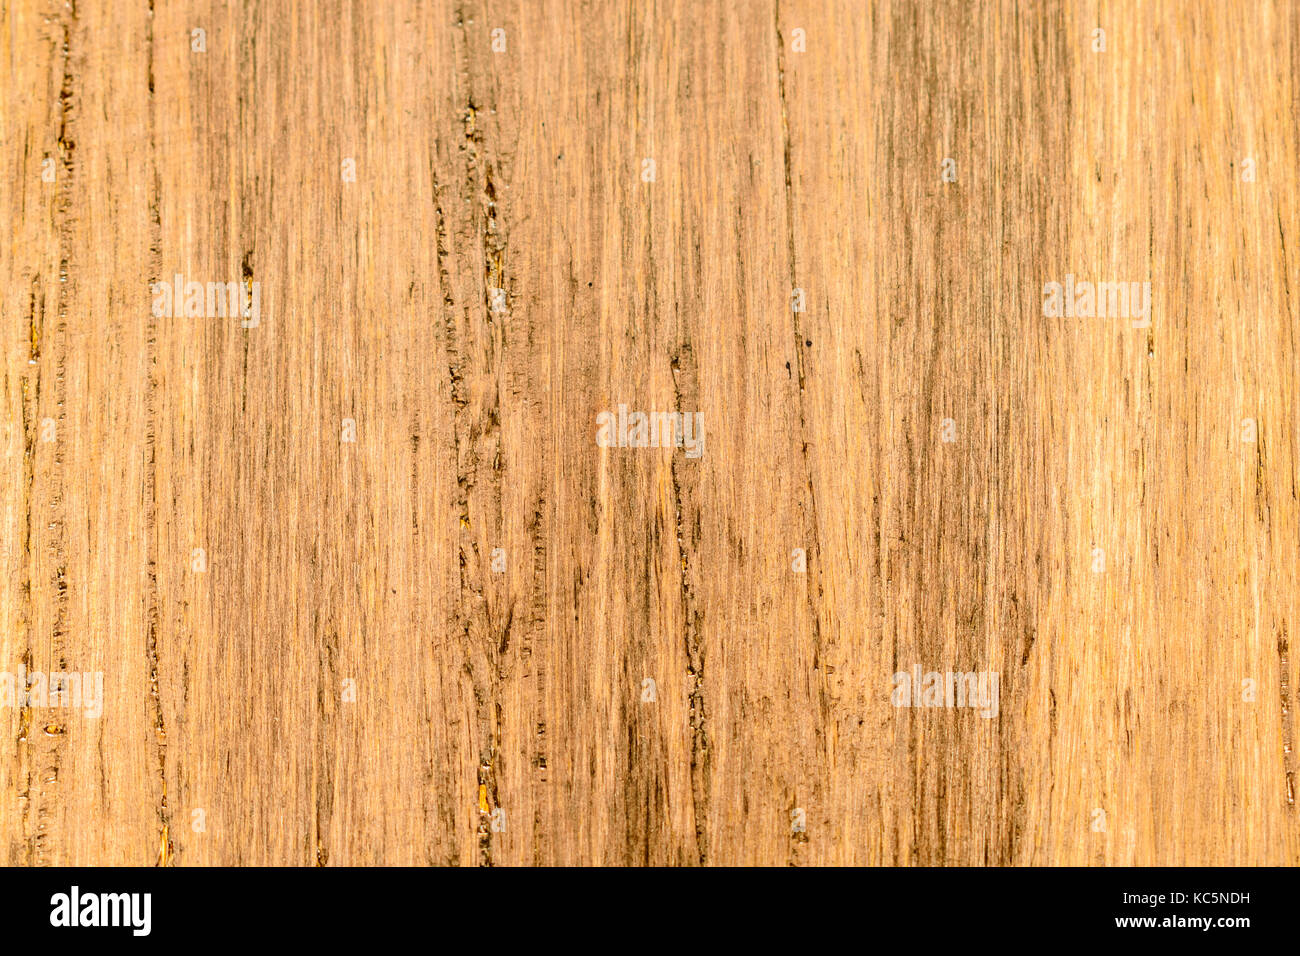 Hardwood Fossilized Bamboo Background Stock Photo